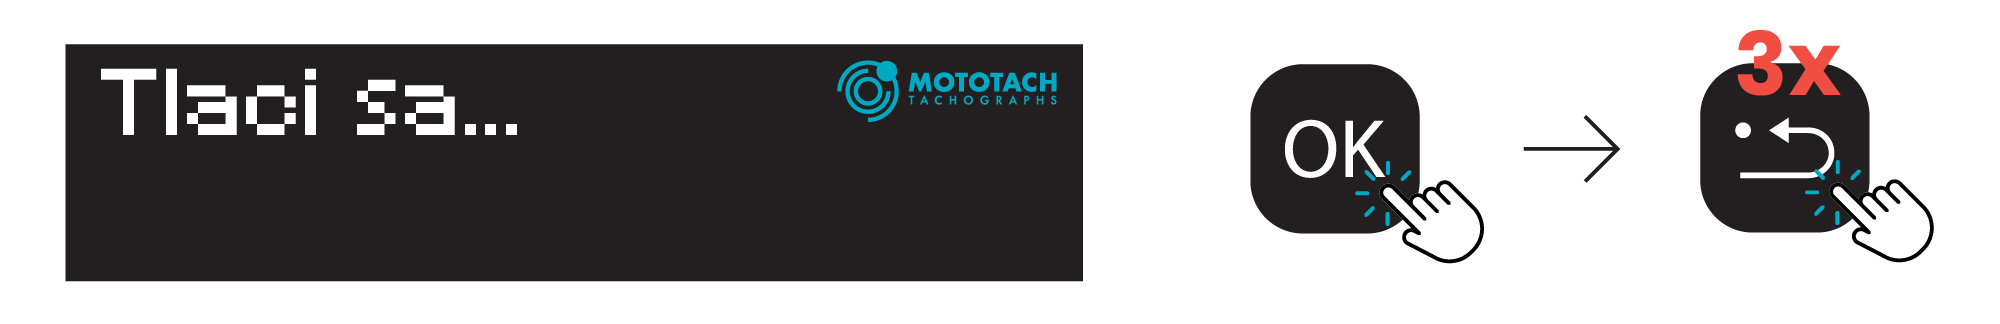 Tachograf vytlačok technickych údajovArtboard 6-min